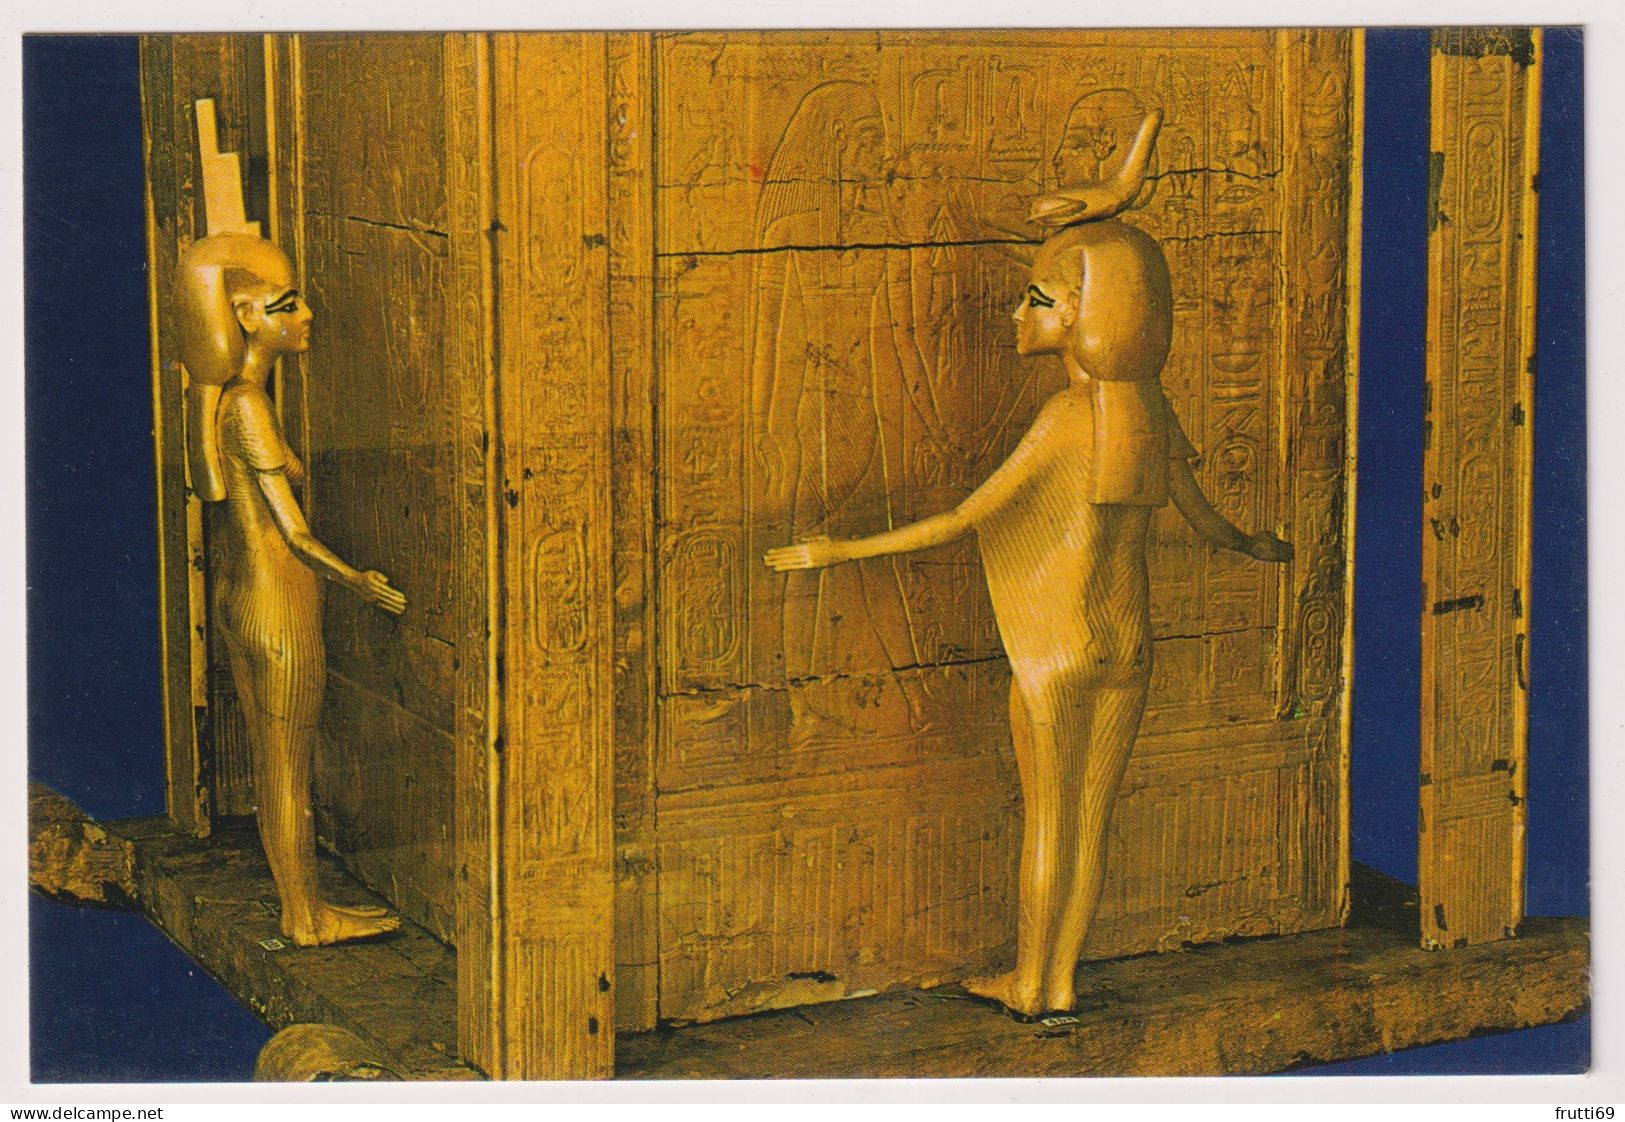 AK 198270 EGYPT -   Cairo - The Egyptian Museum - Tutankhamen's Treasures - Large Gold Canopie Chest - Musées